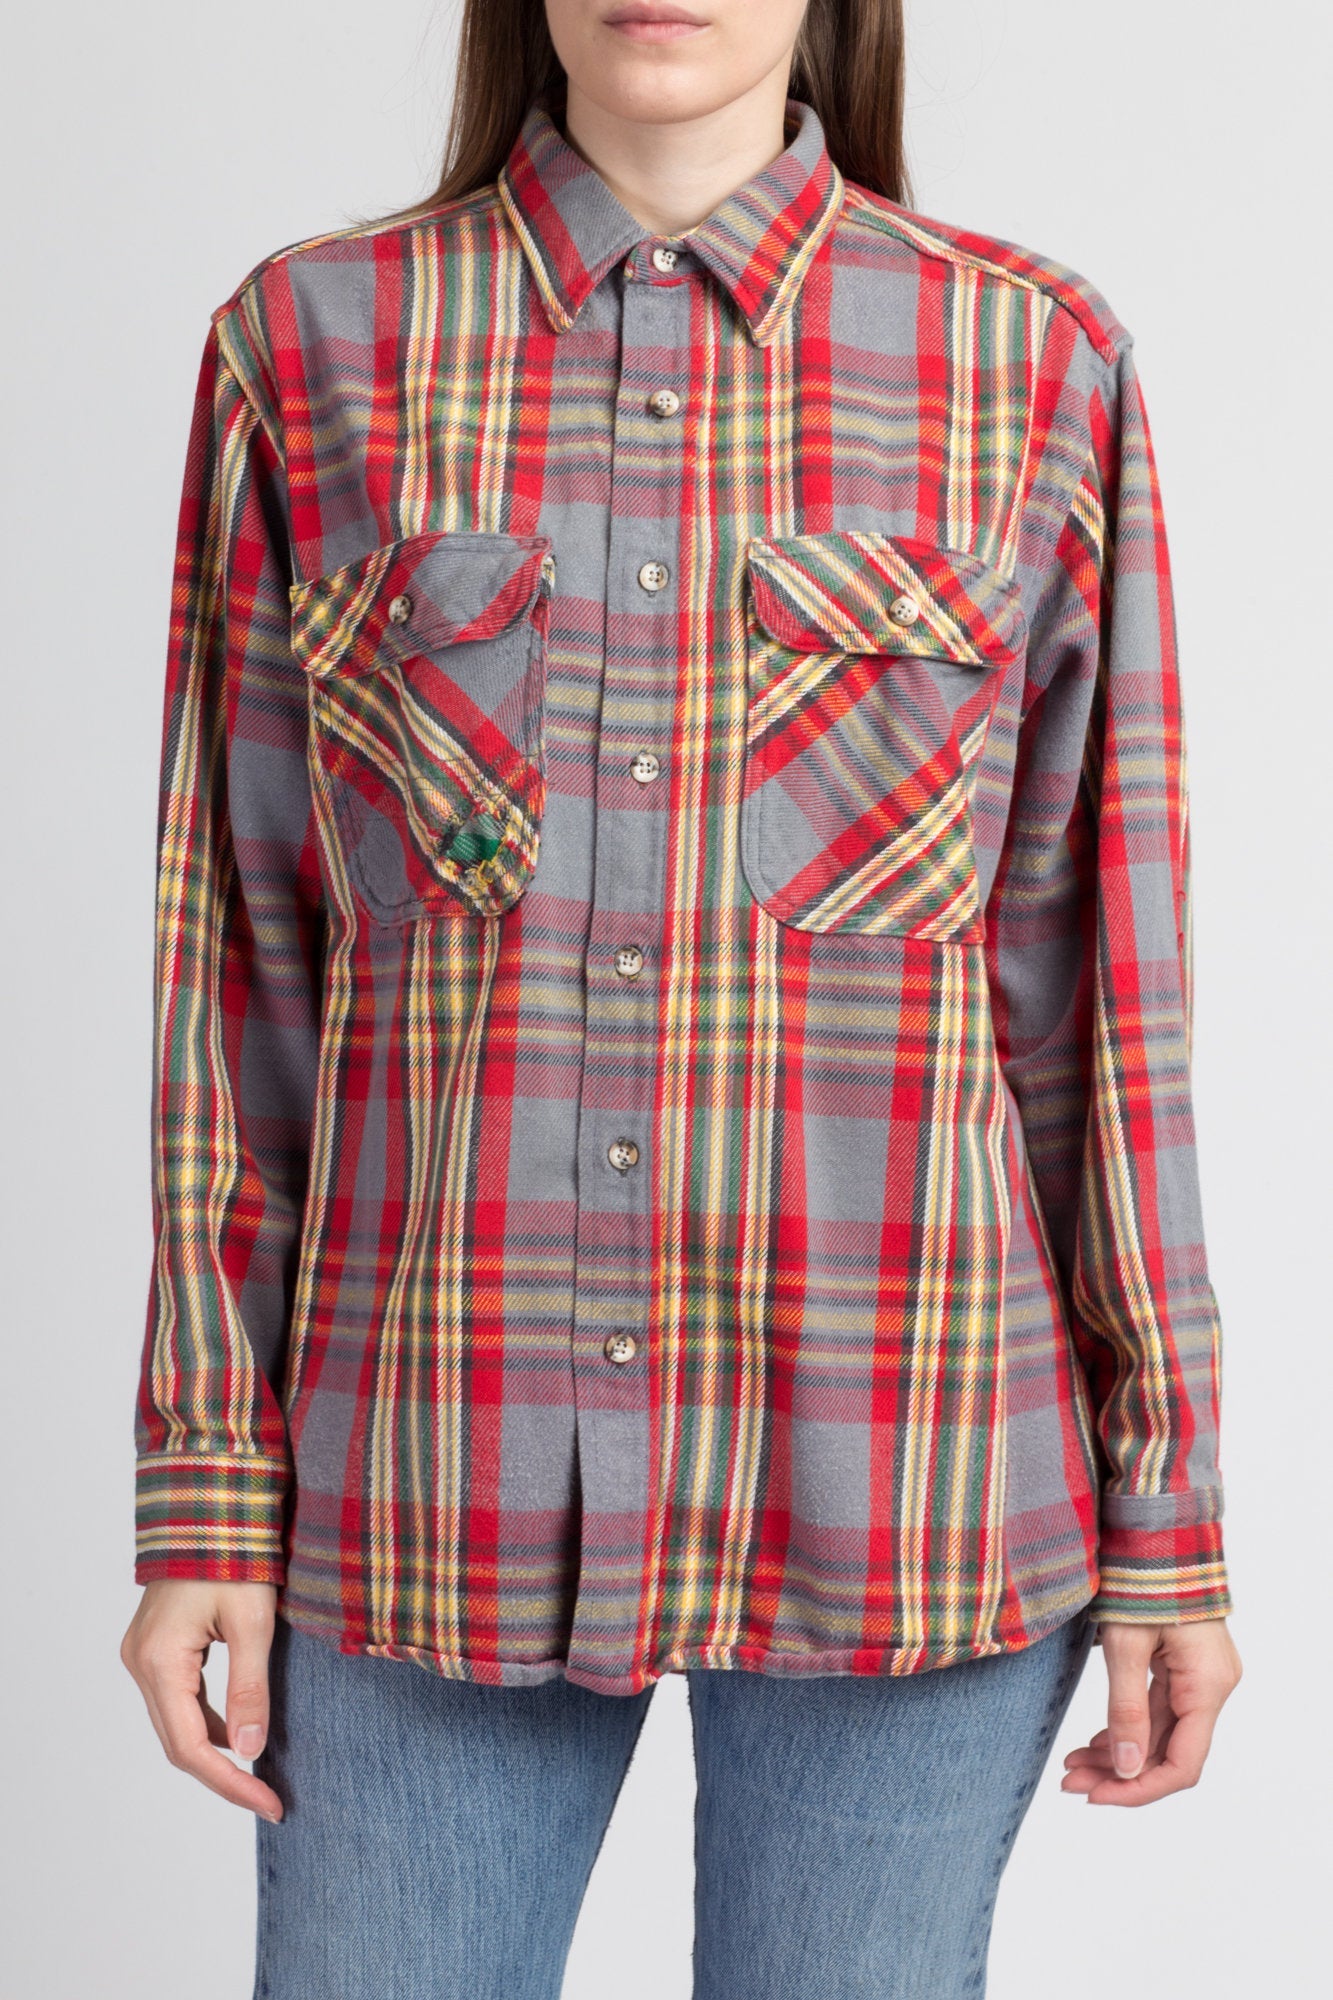 Vintage Ralph Lauren Plaid Shirt Size L 